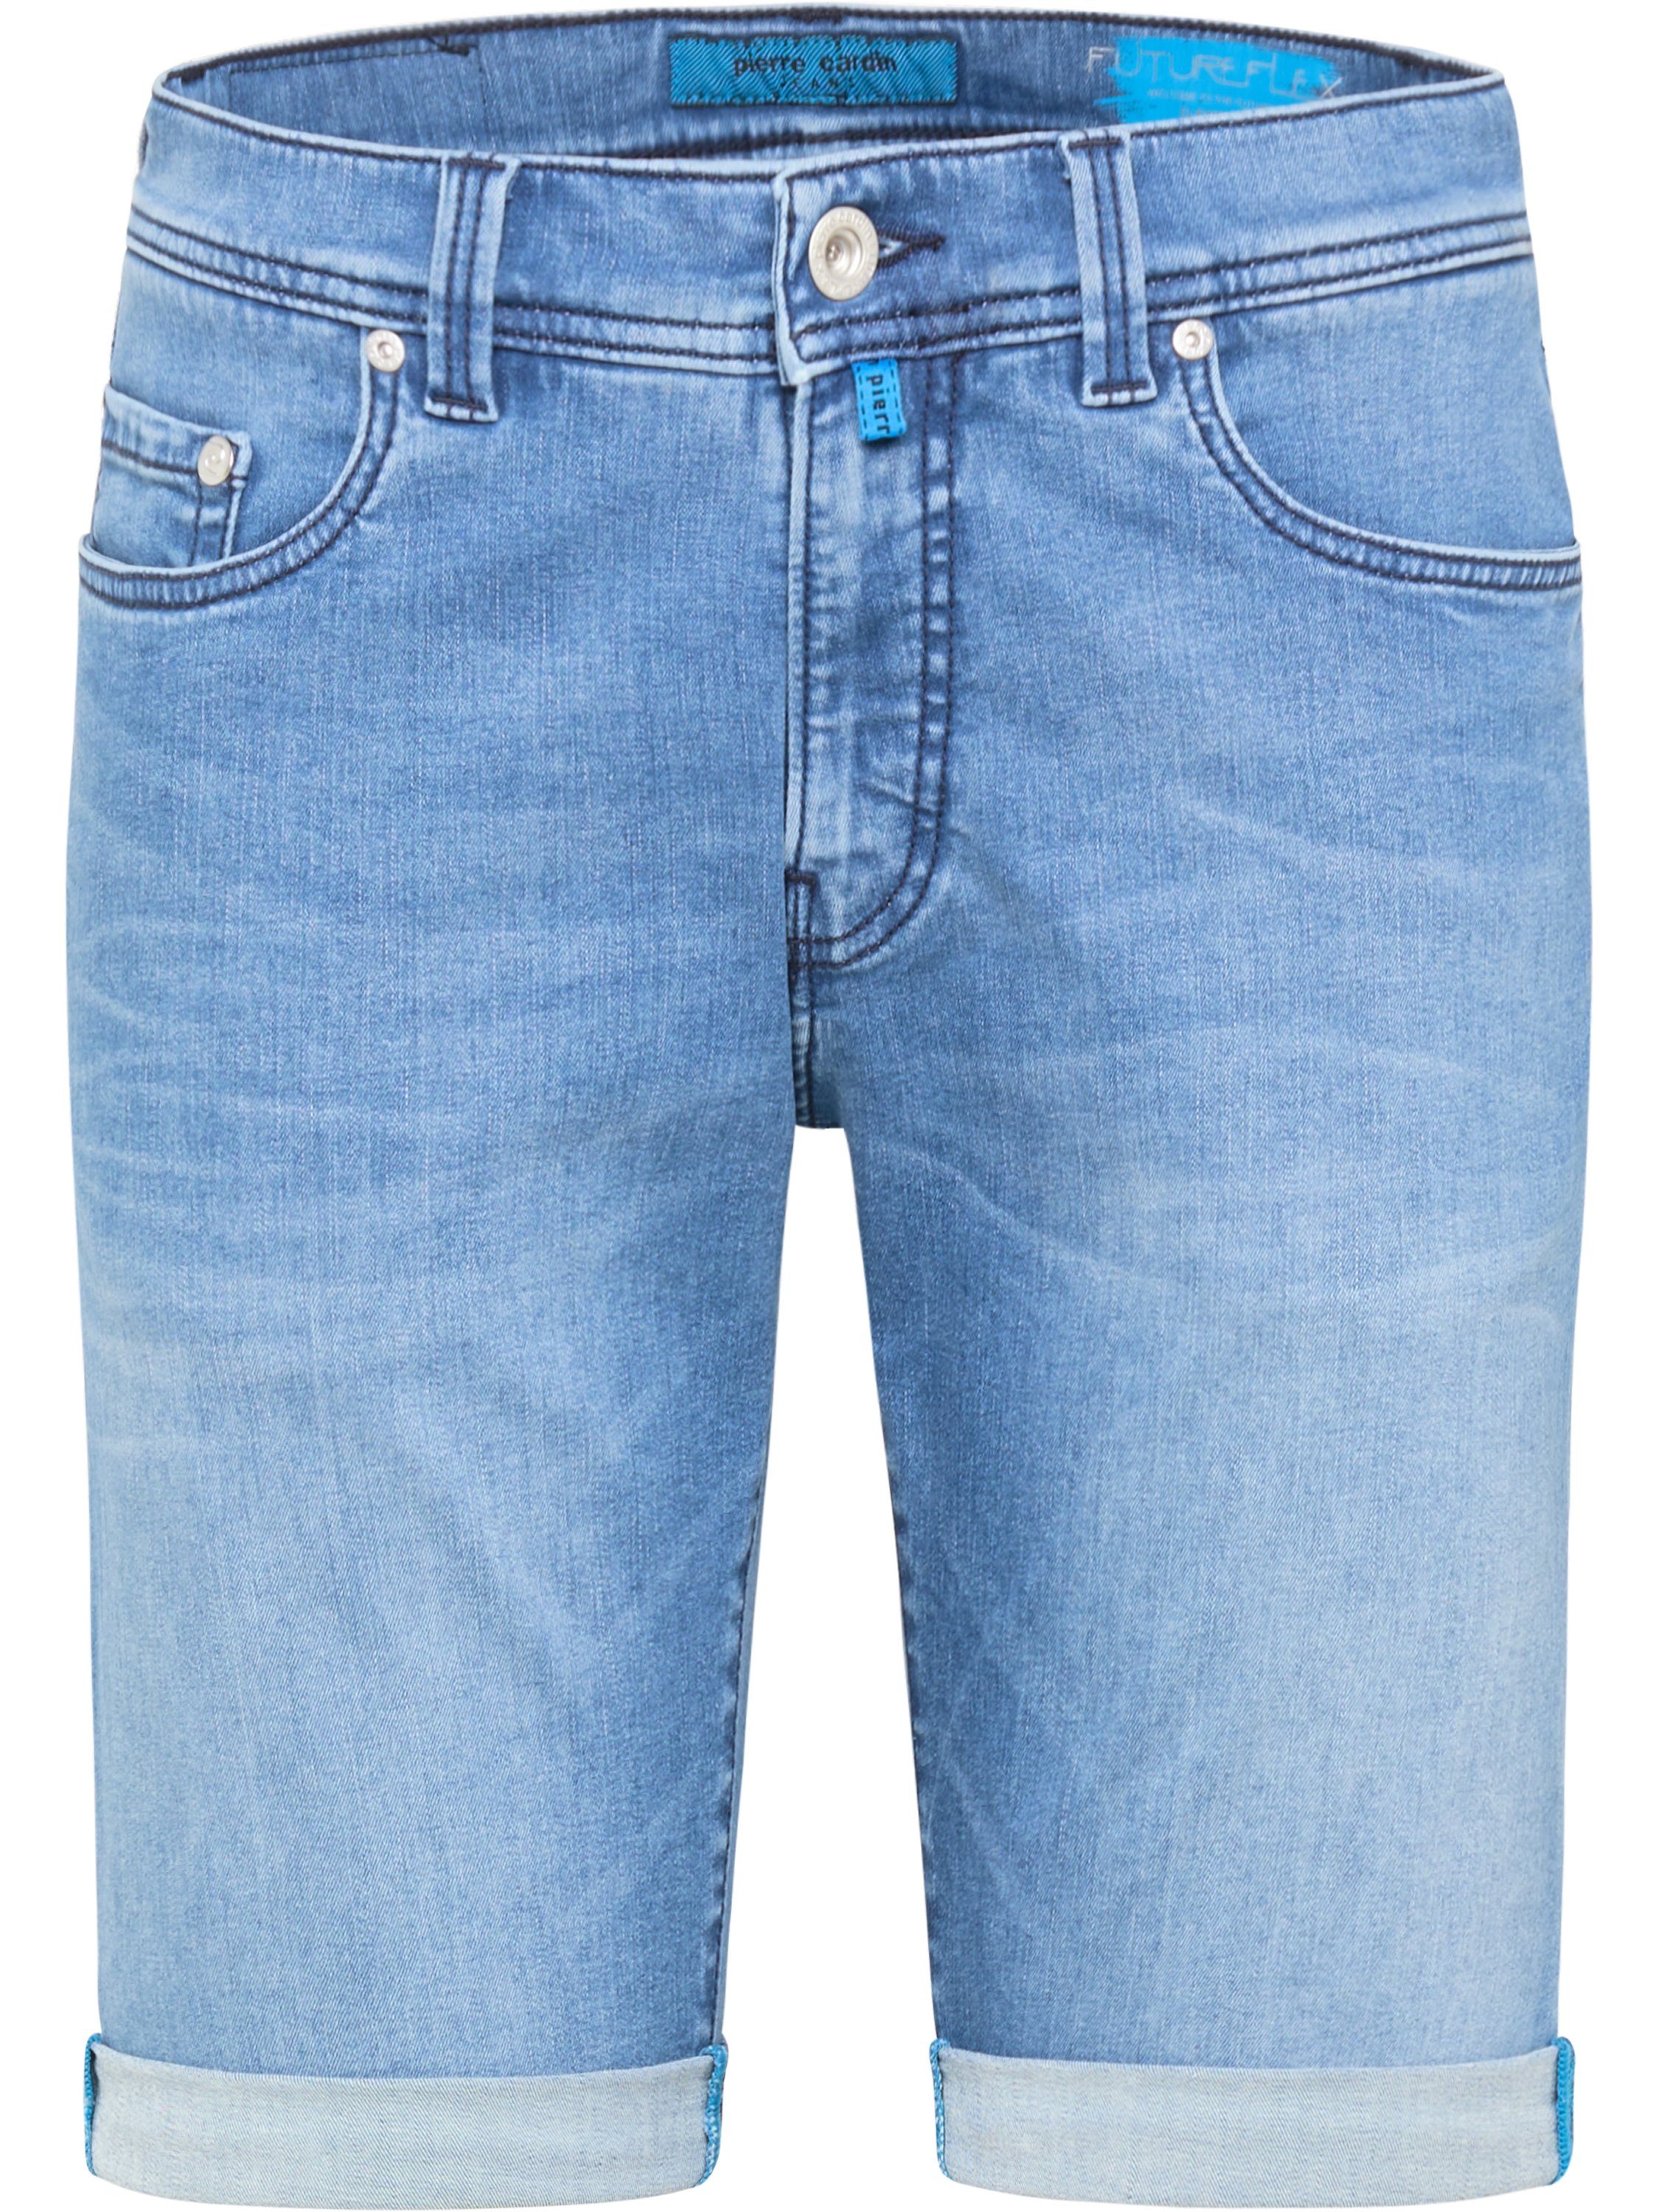 PIERRE SHORTS FUTUREFLEX mid Cardin 5-Pocket-Jeans 8860.06 stone Pierre LYON - blue 3852 CARDIN